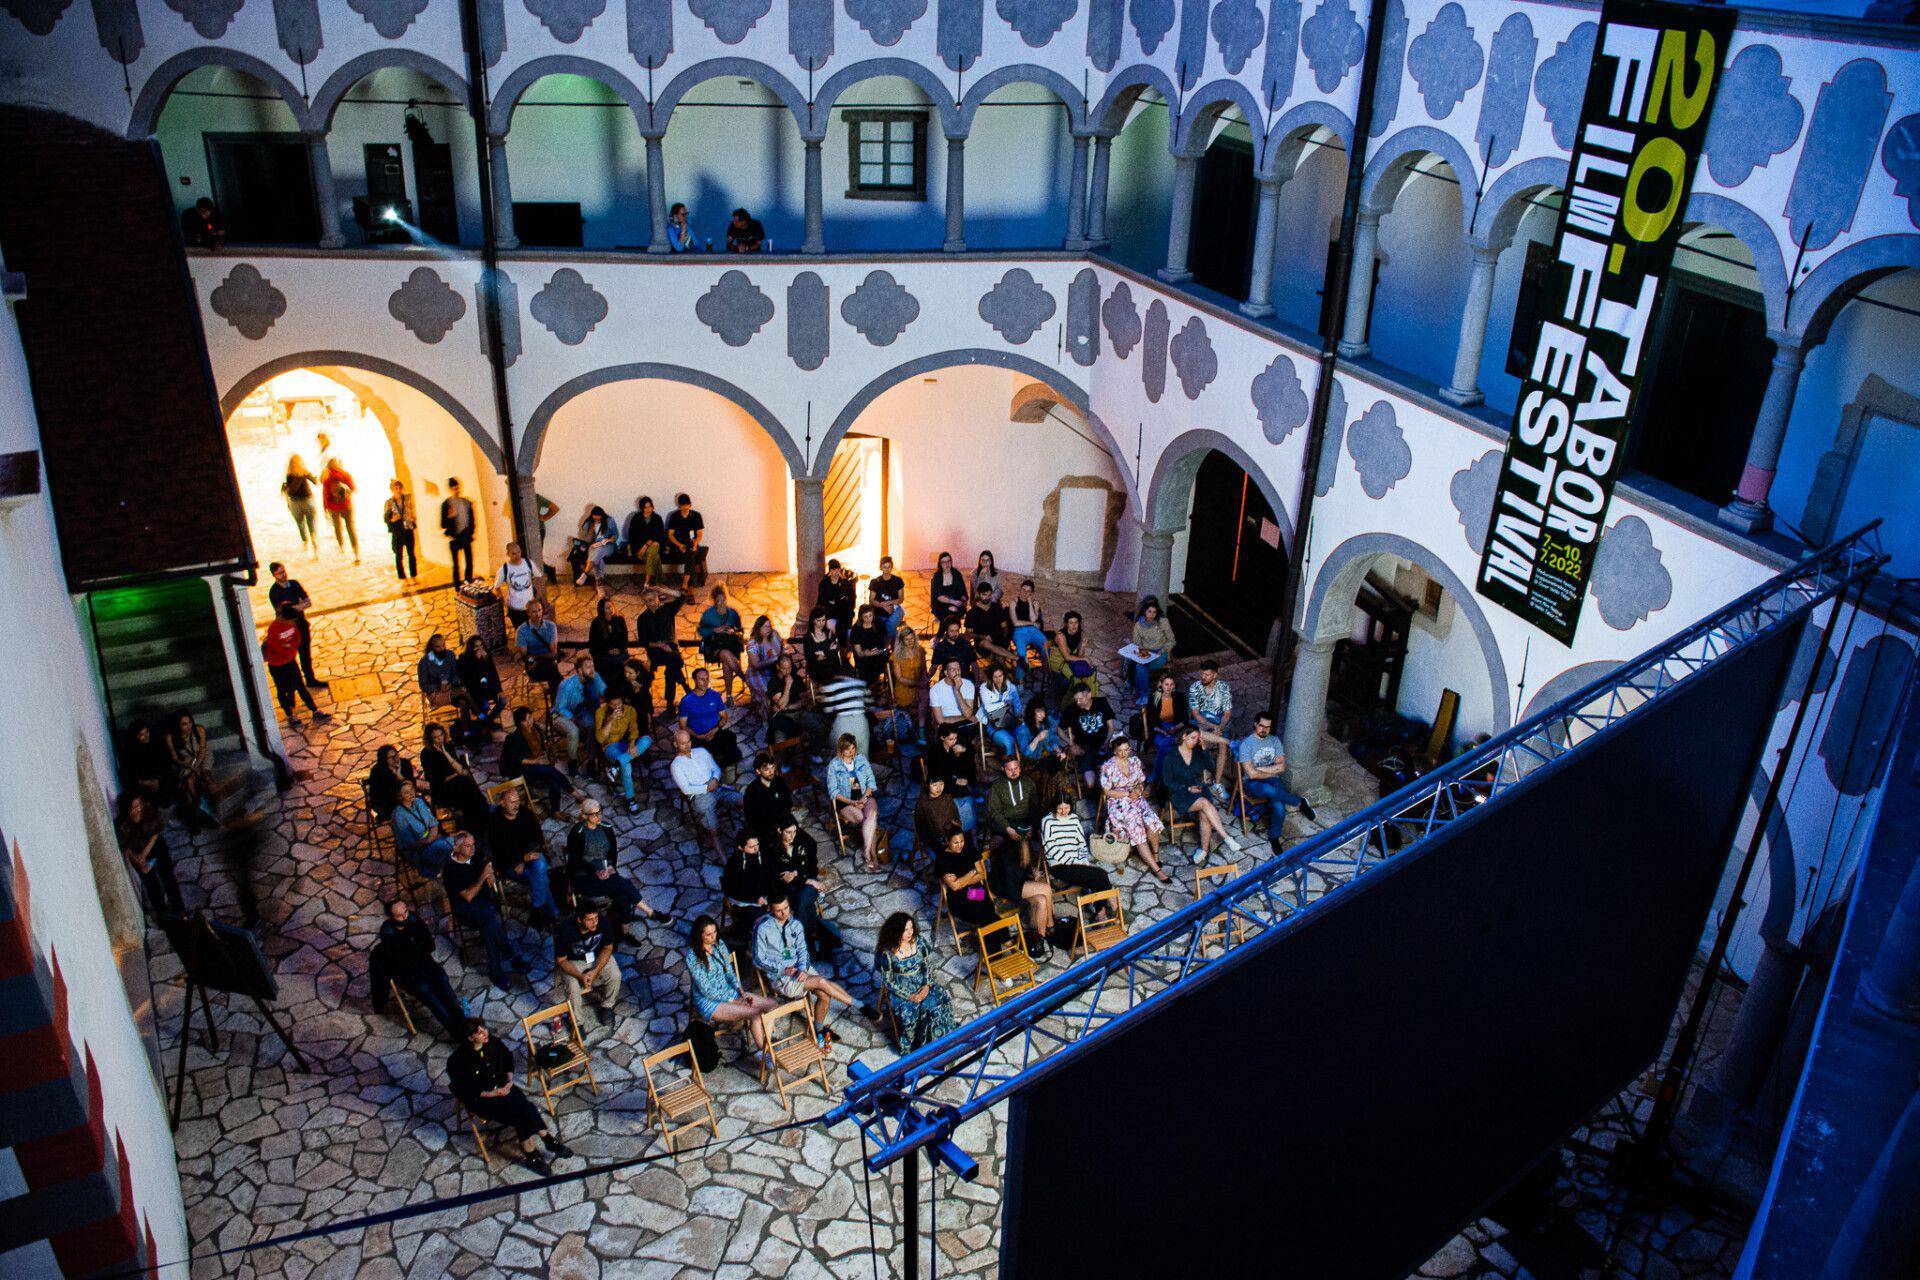 Filmski festival u dvorcu Tabor: Predstavit će 22 filma, jedan od njih inspiriran je Prosinečkim